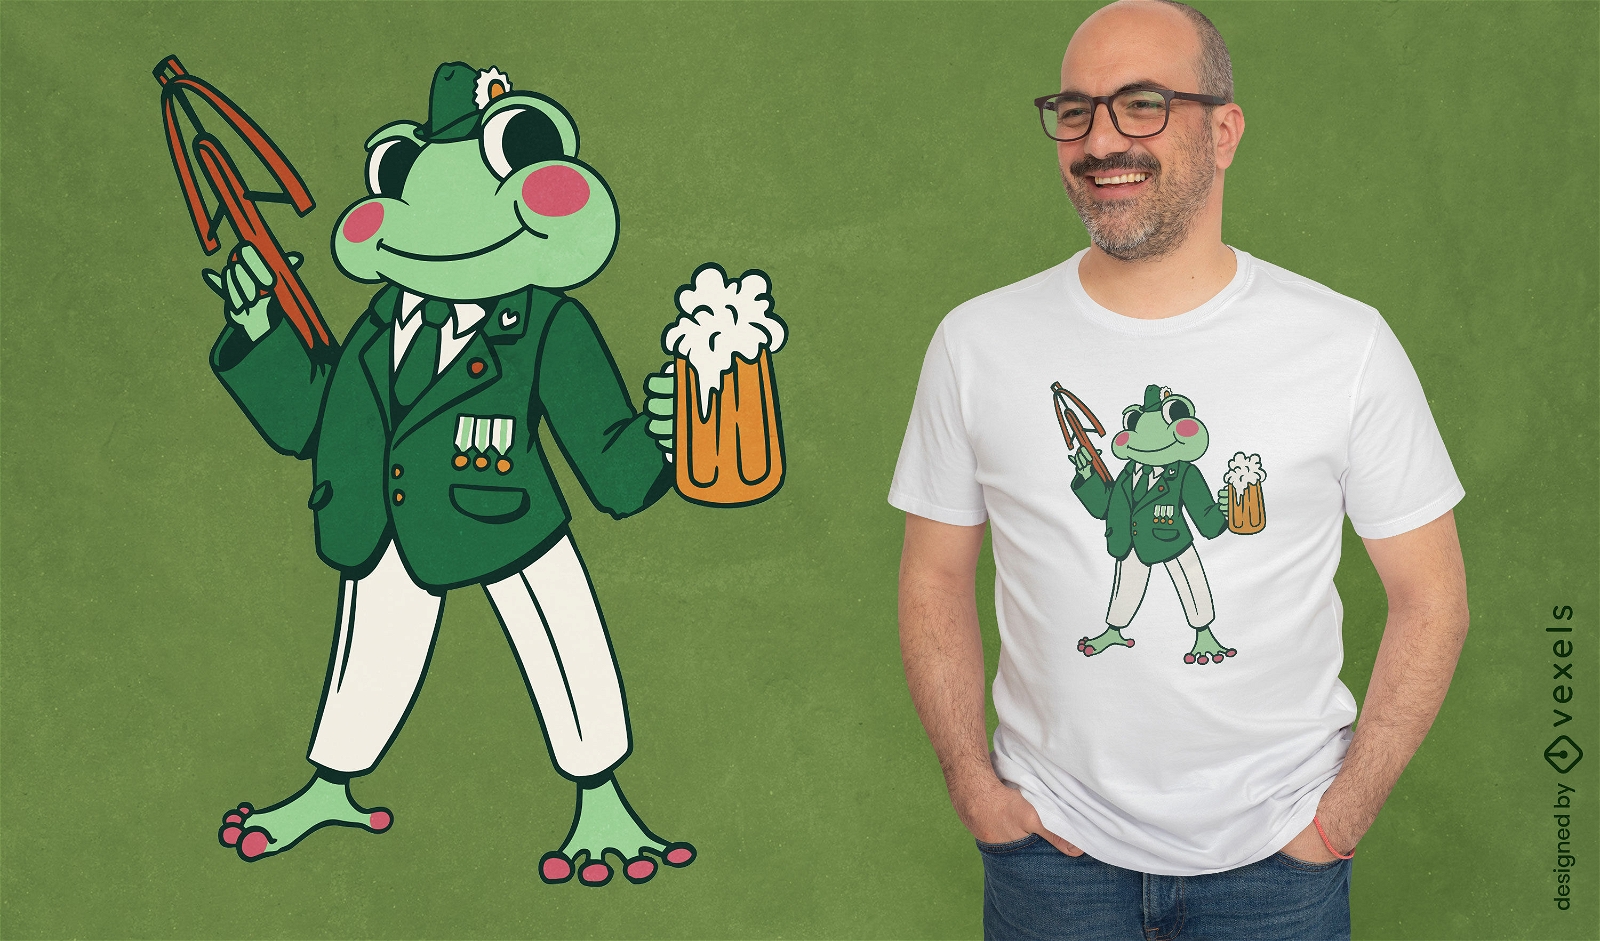 Schutzenfest frog cartoon t-shirt design